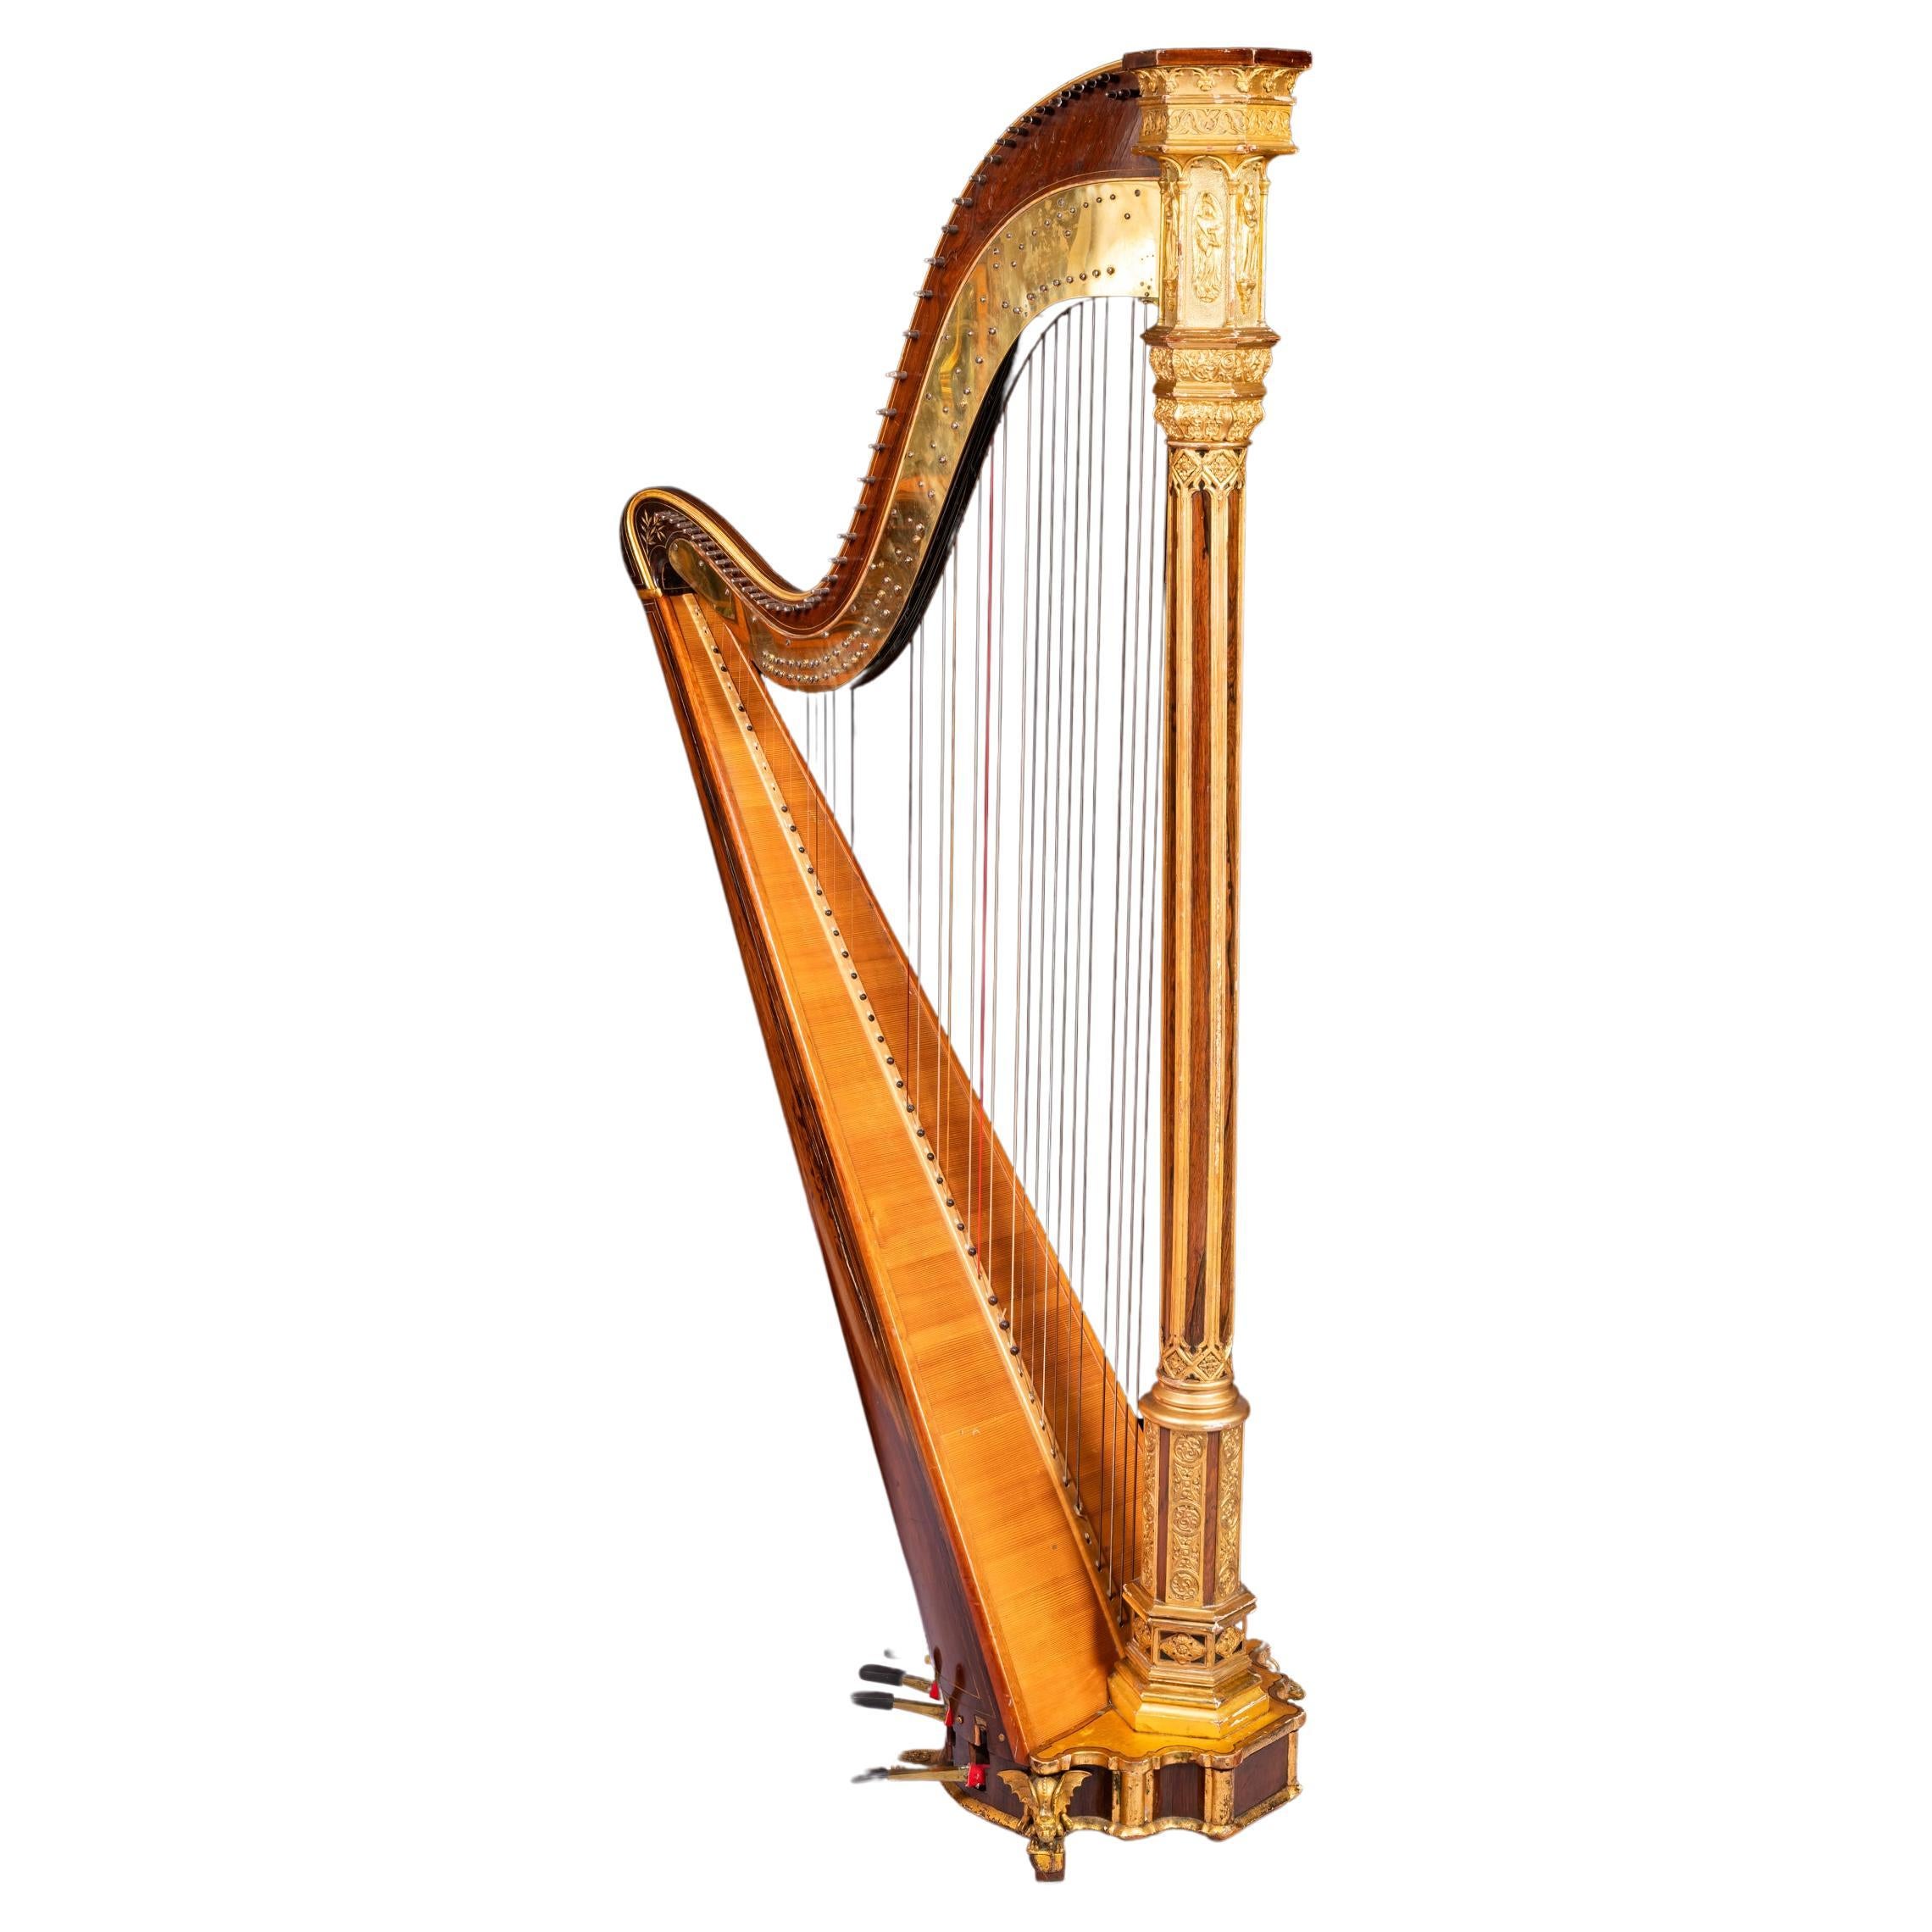 Parcel vergoldete Harfe im gotischen Stil des frühen 19. Jahrhunderts von Sebastian Erard